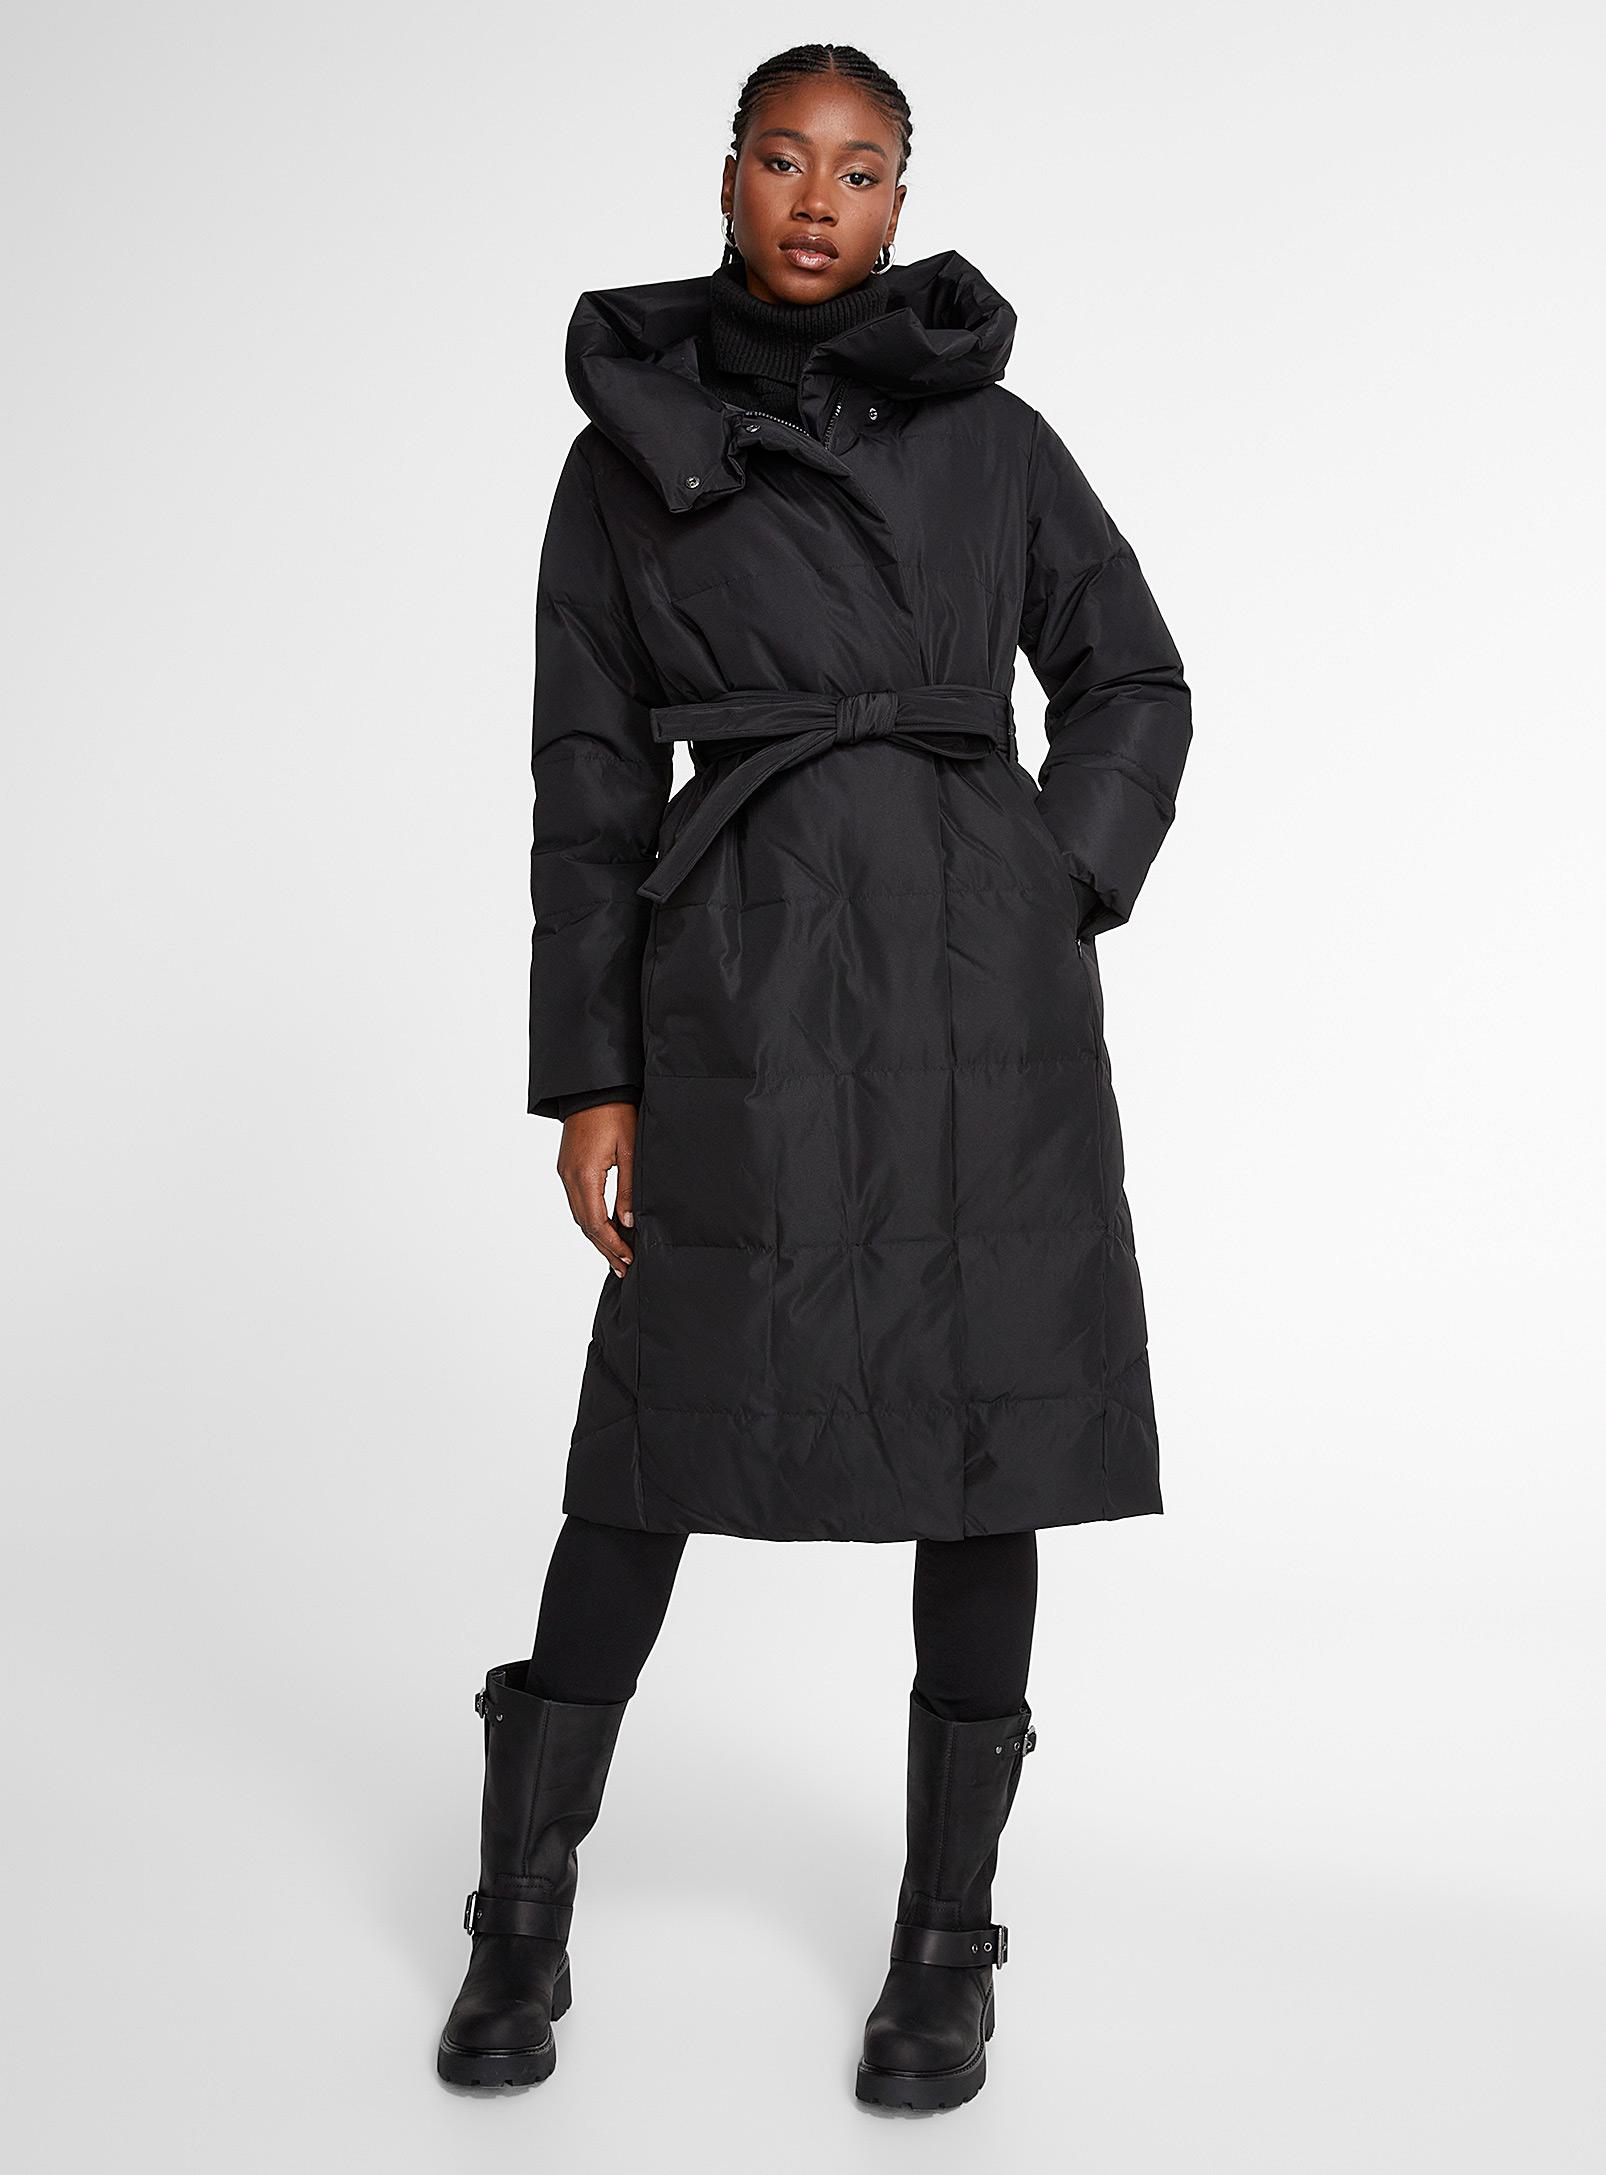 Black Hooded Trench Coat for Women - VERO MODA